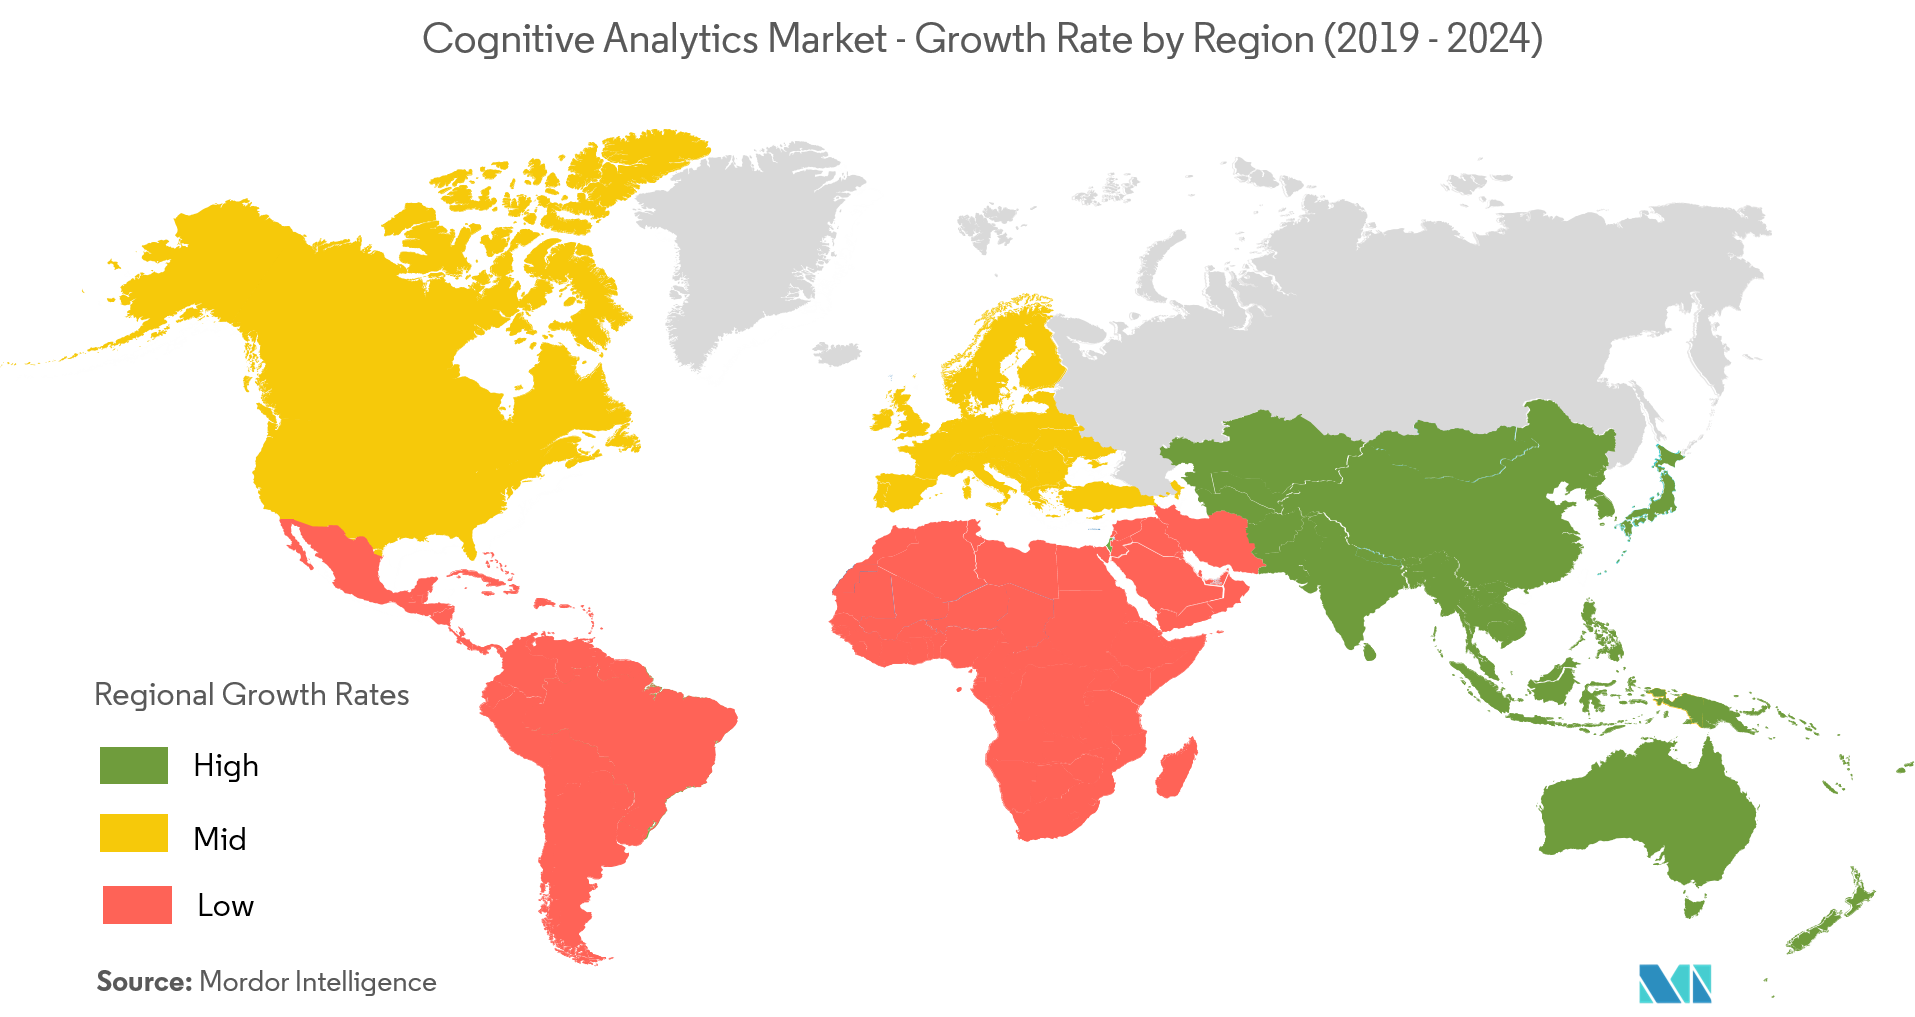 认知分析市场 - 按地区划分的增长率（2019 - 2024）